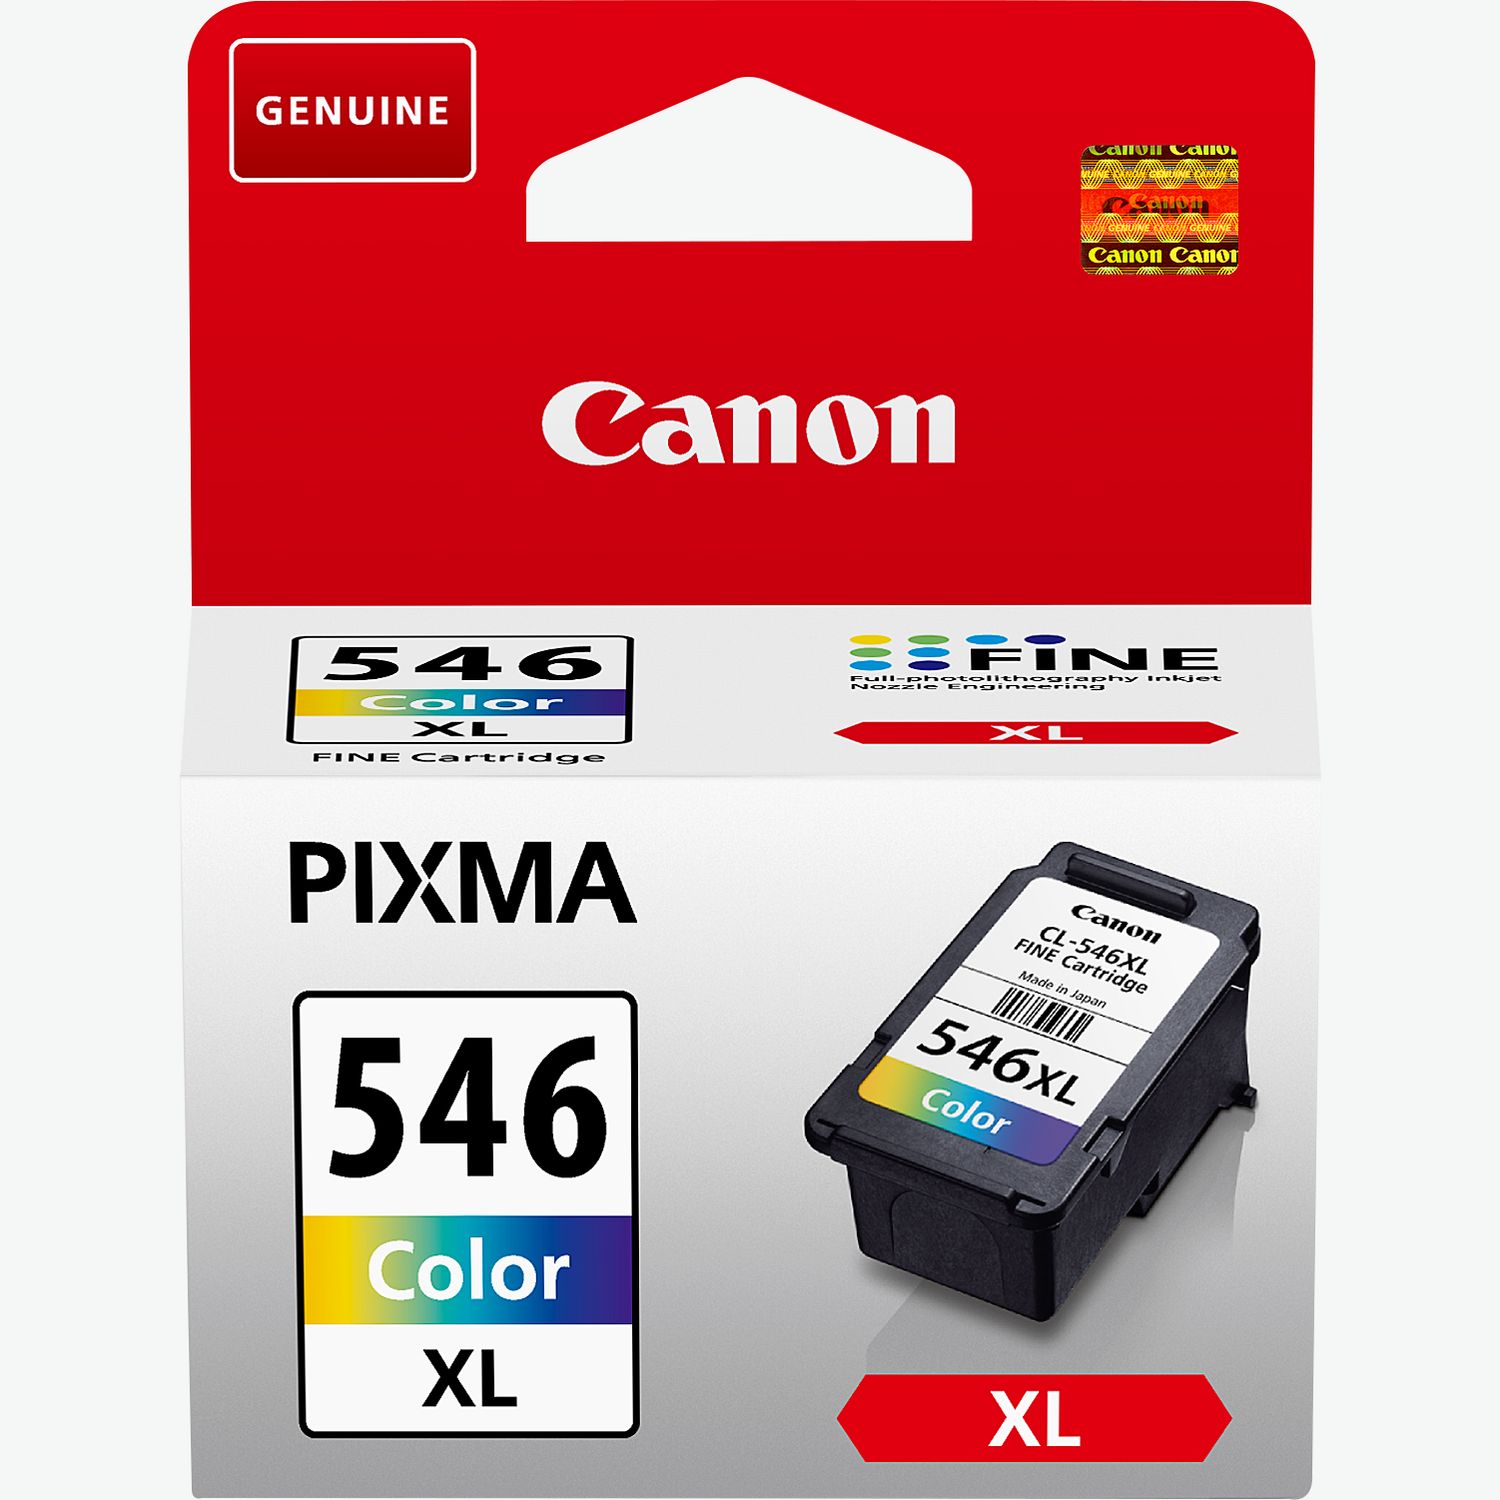 Canon Pixma TS3450 : meilleur prix, test et actualités - Les